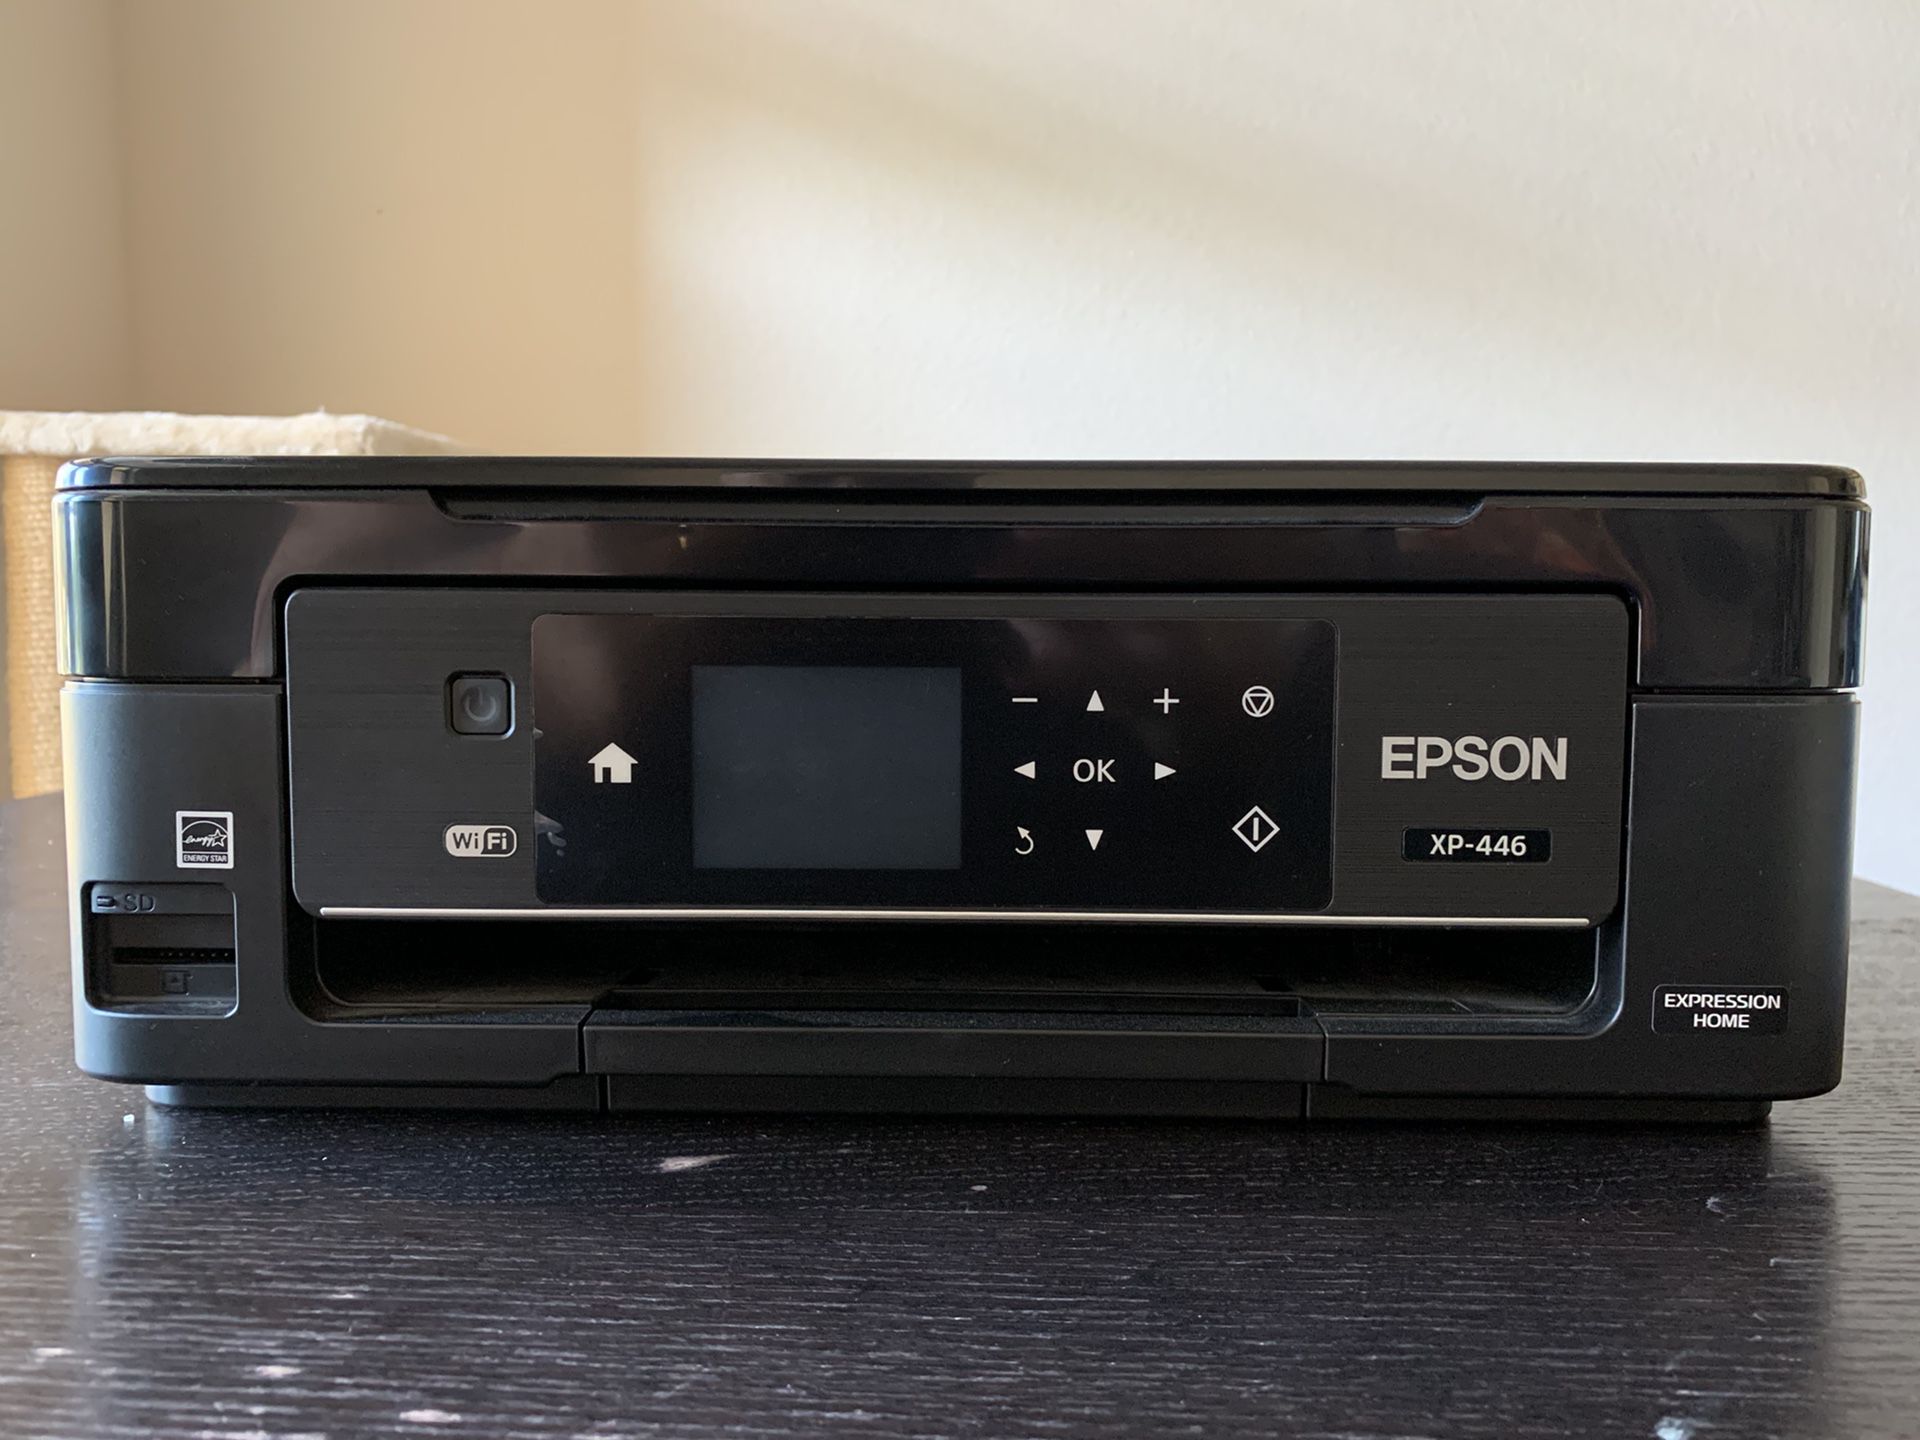 Epson XP-446 Color Printer